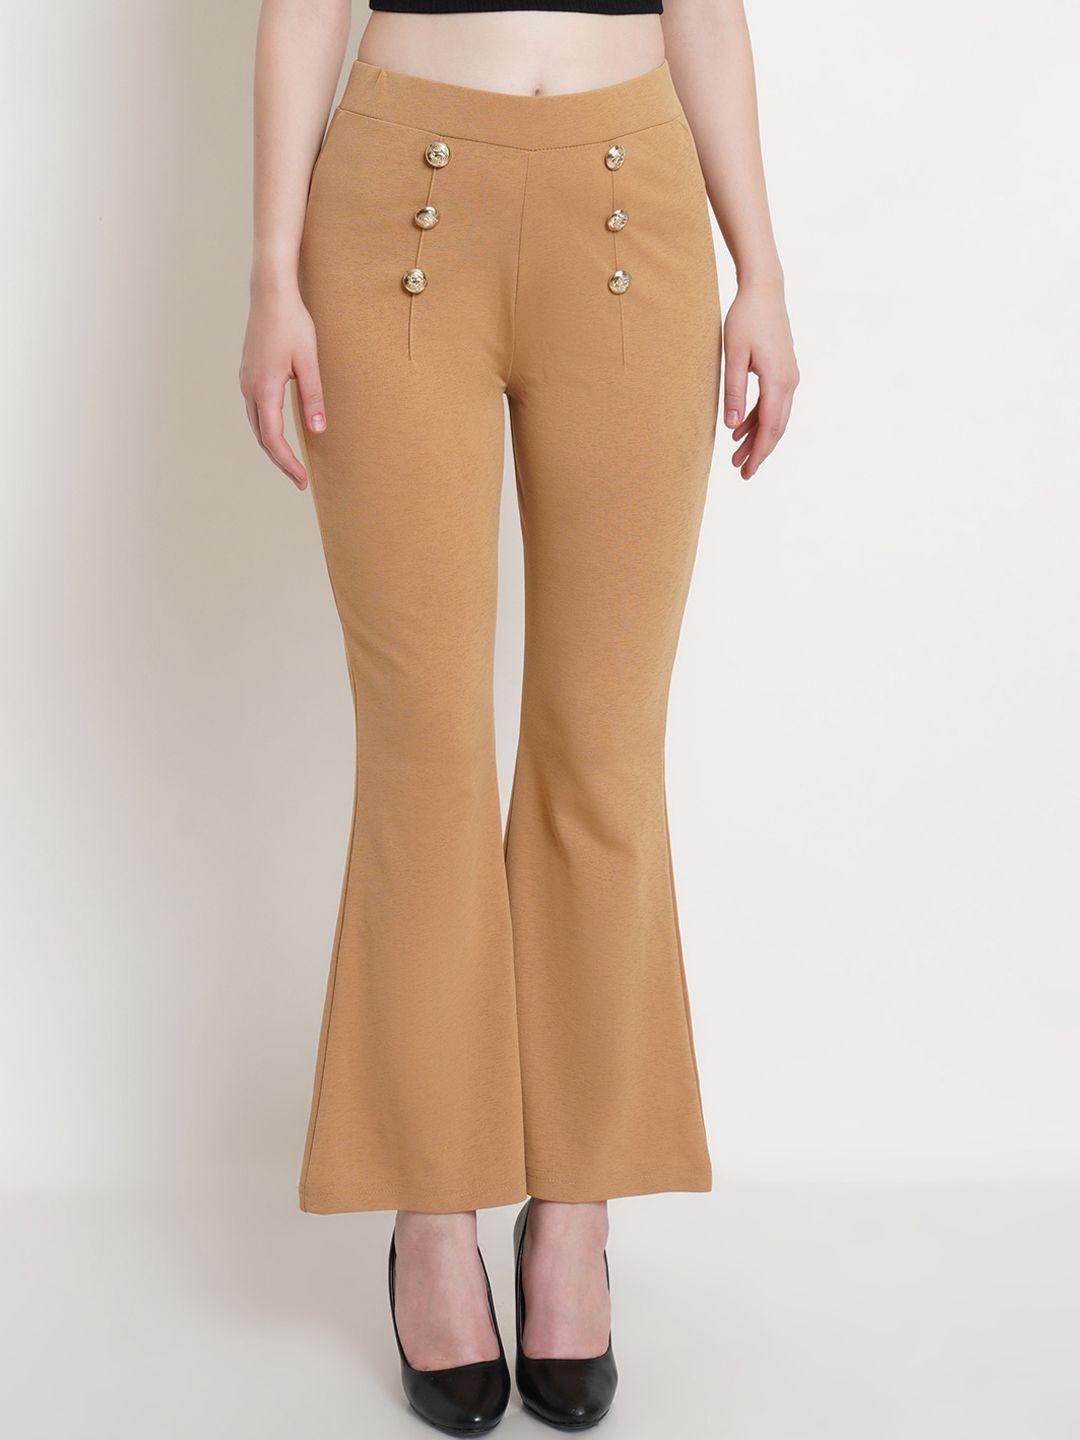 popwings-women-camel-brown-bootcut-smart-trousers